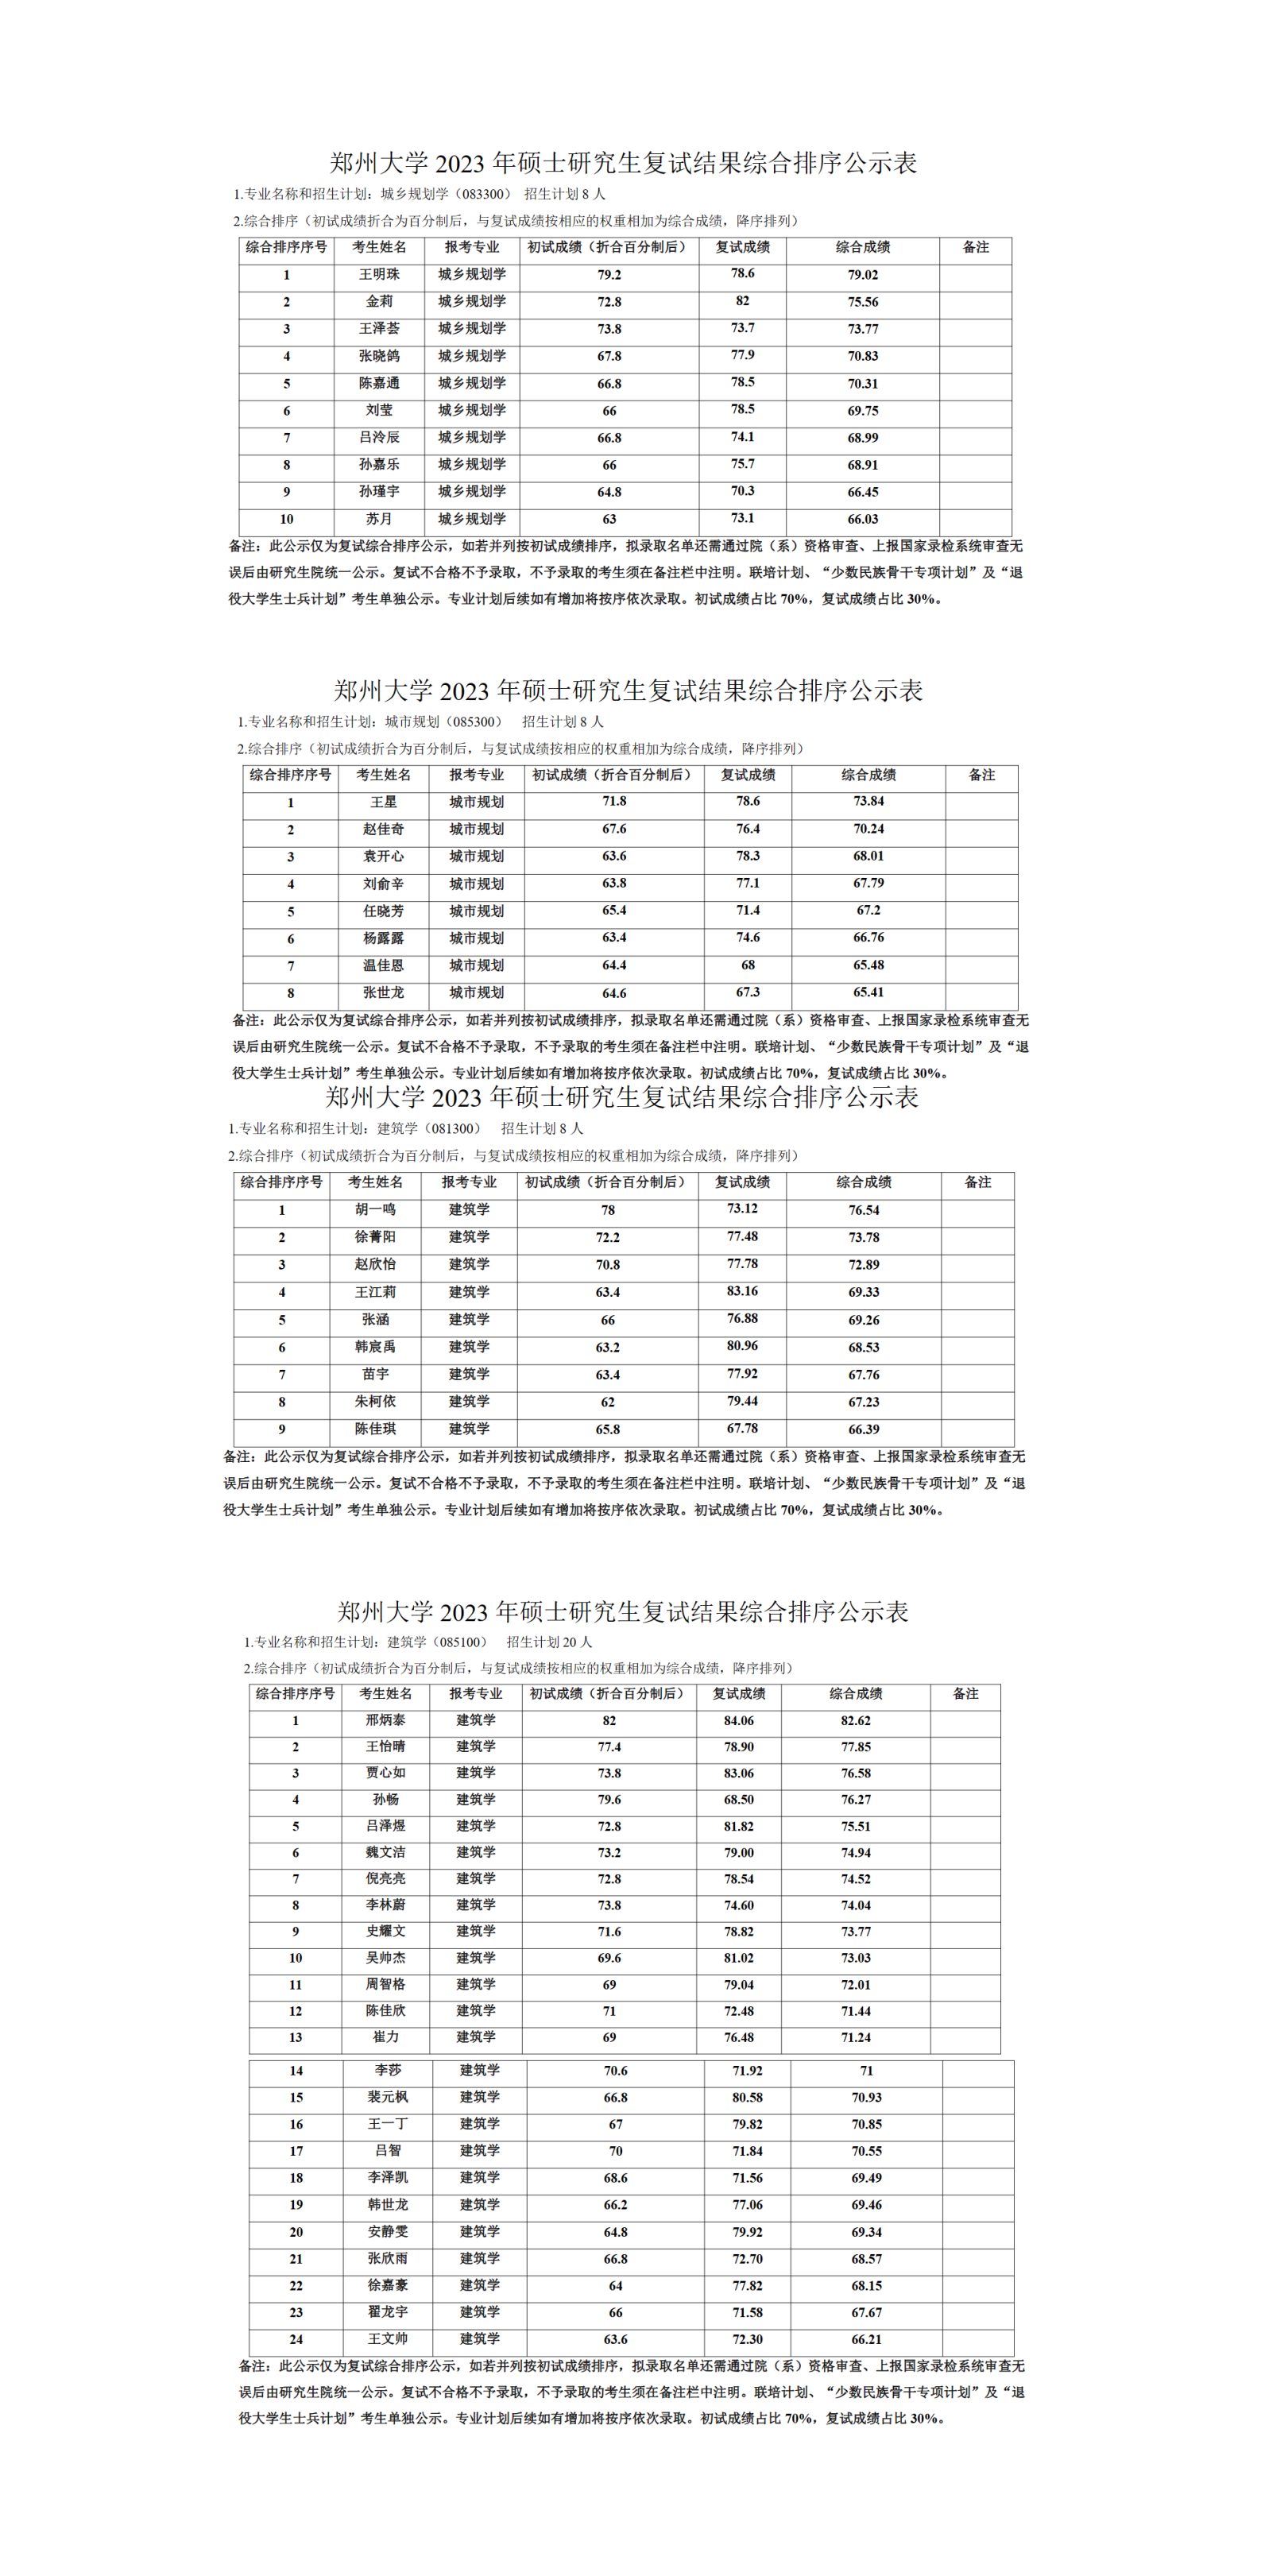 郑州大学2023年硕士研究生复试结果综合排序公示表_01.png